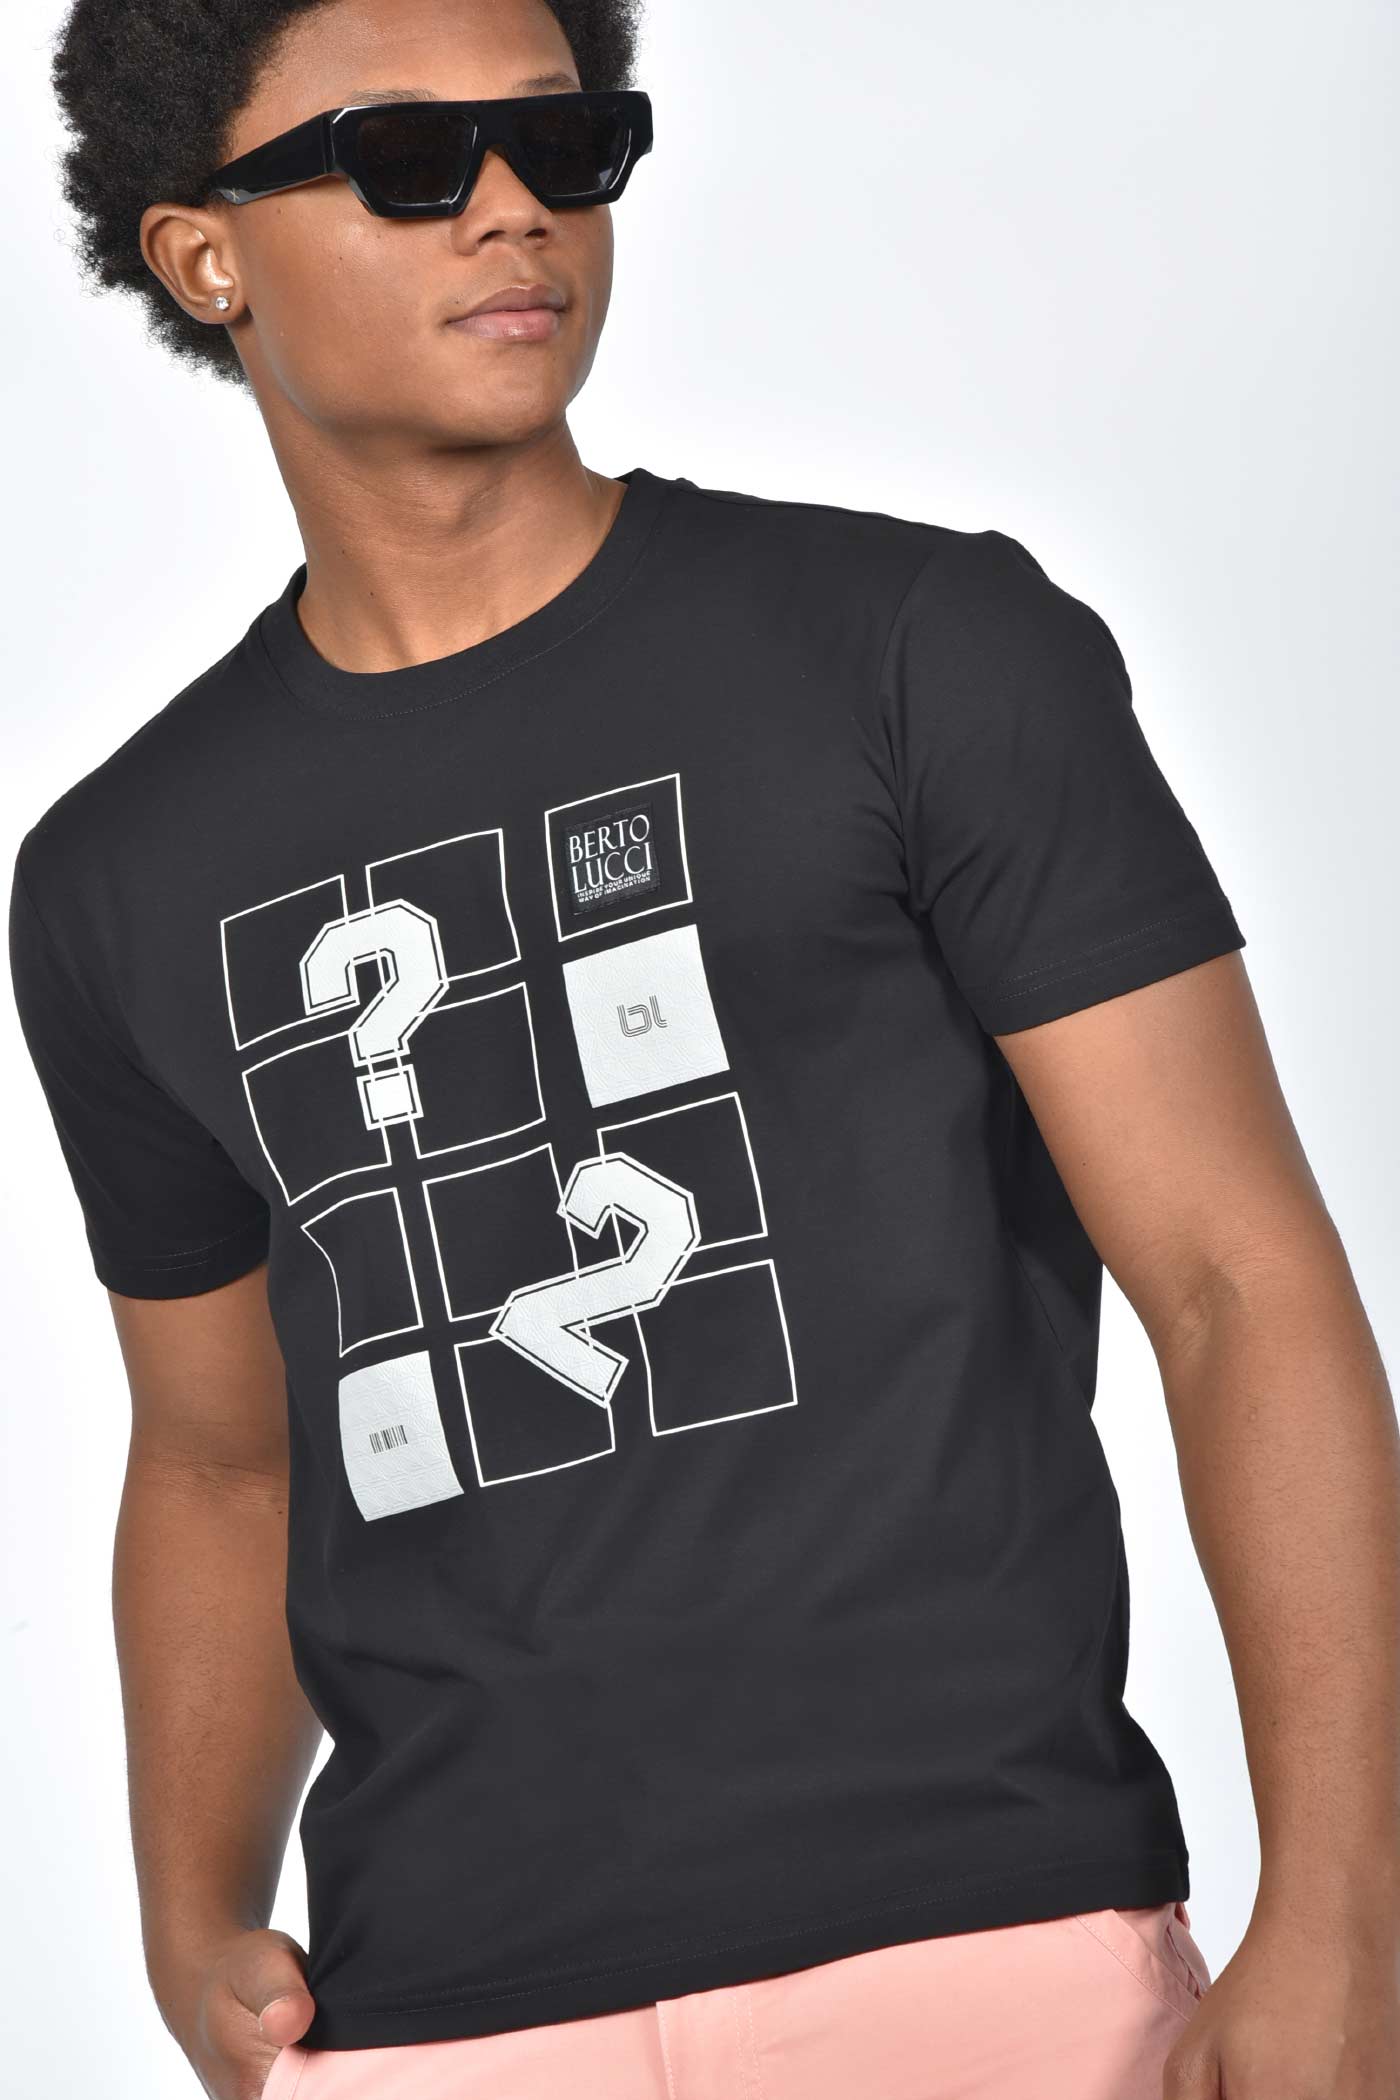 ανδρικό-t-shirt-με-τετράγωνα-σχέδια